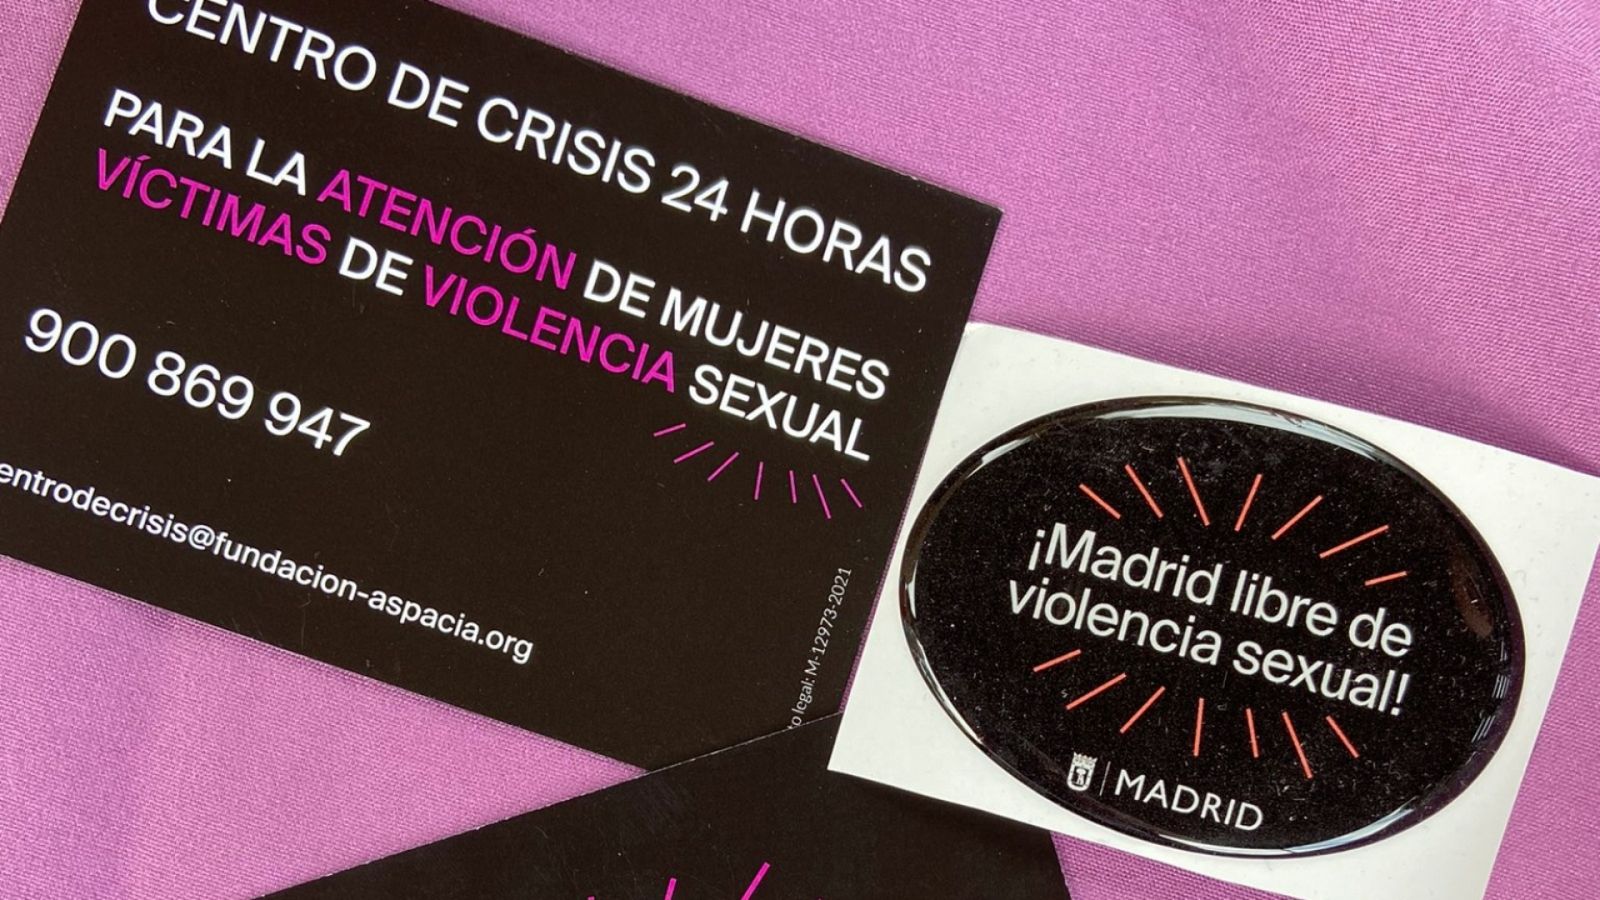 24 horas - Dentro de un centro de crisis contra la violencia sexual - Escuchar ahora